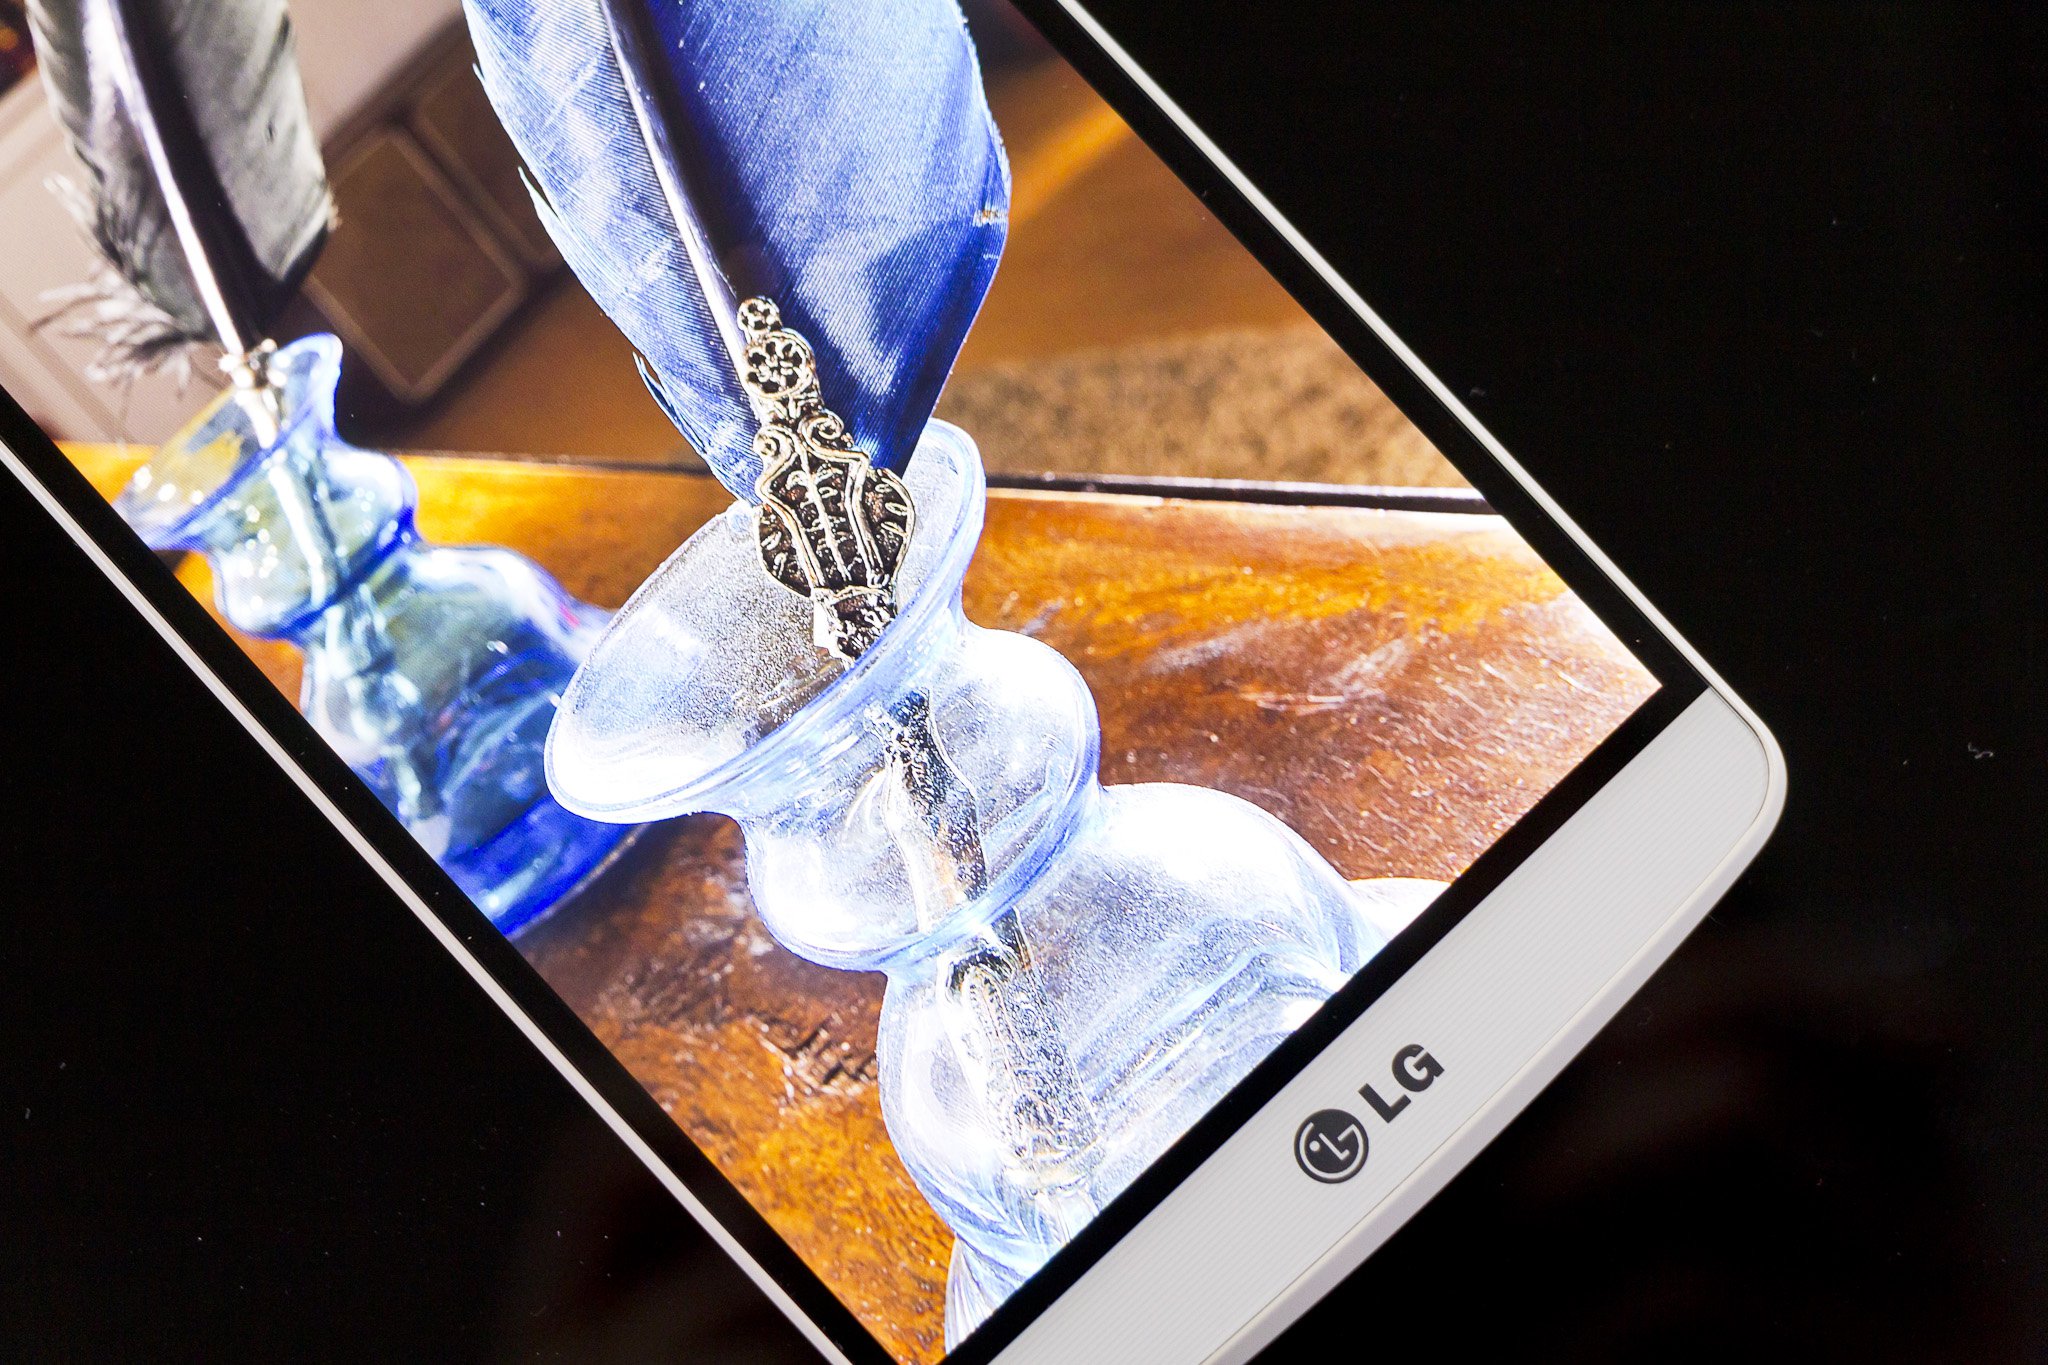 LG G4 là sản phẩm được mong chờ nhất trong năm 2015 của những tín đồ LG